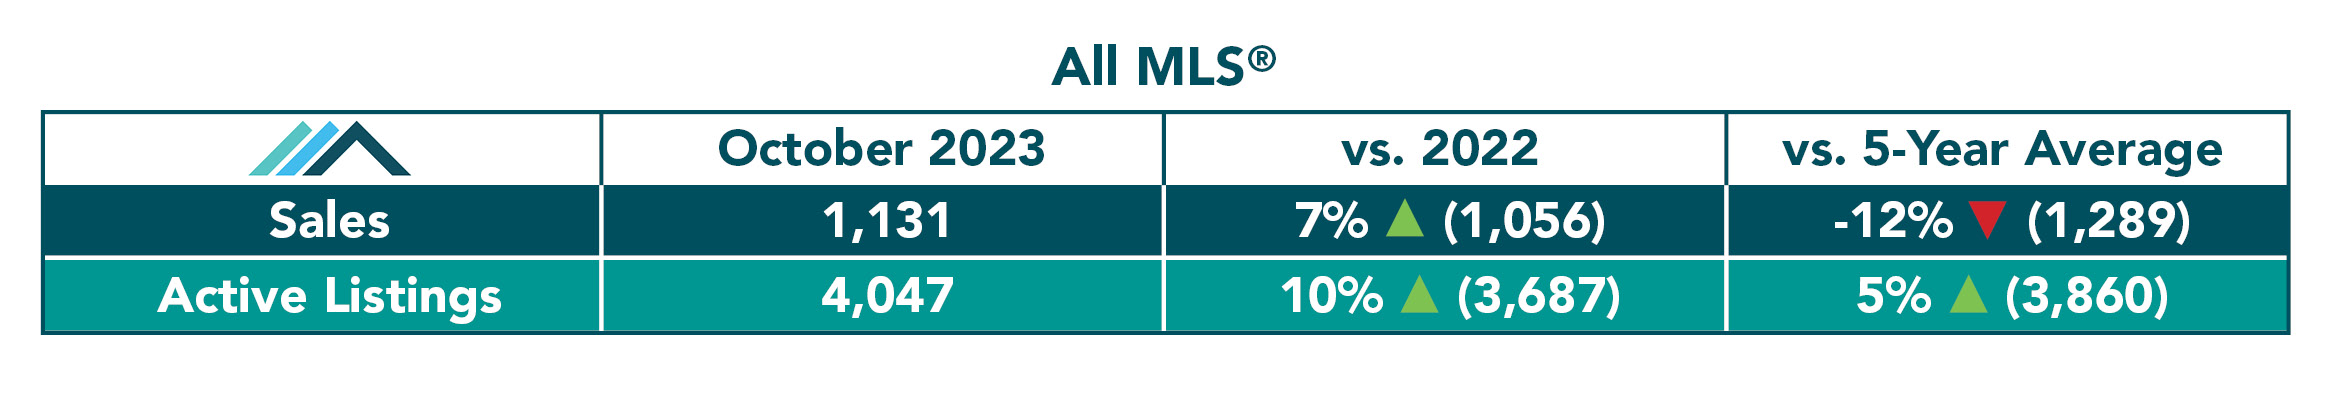 All MLS Table October 2023.jpg (180 KB)